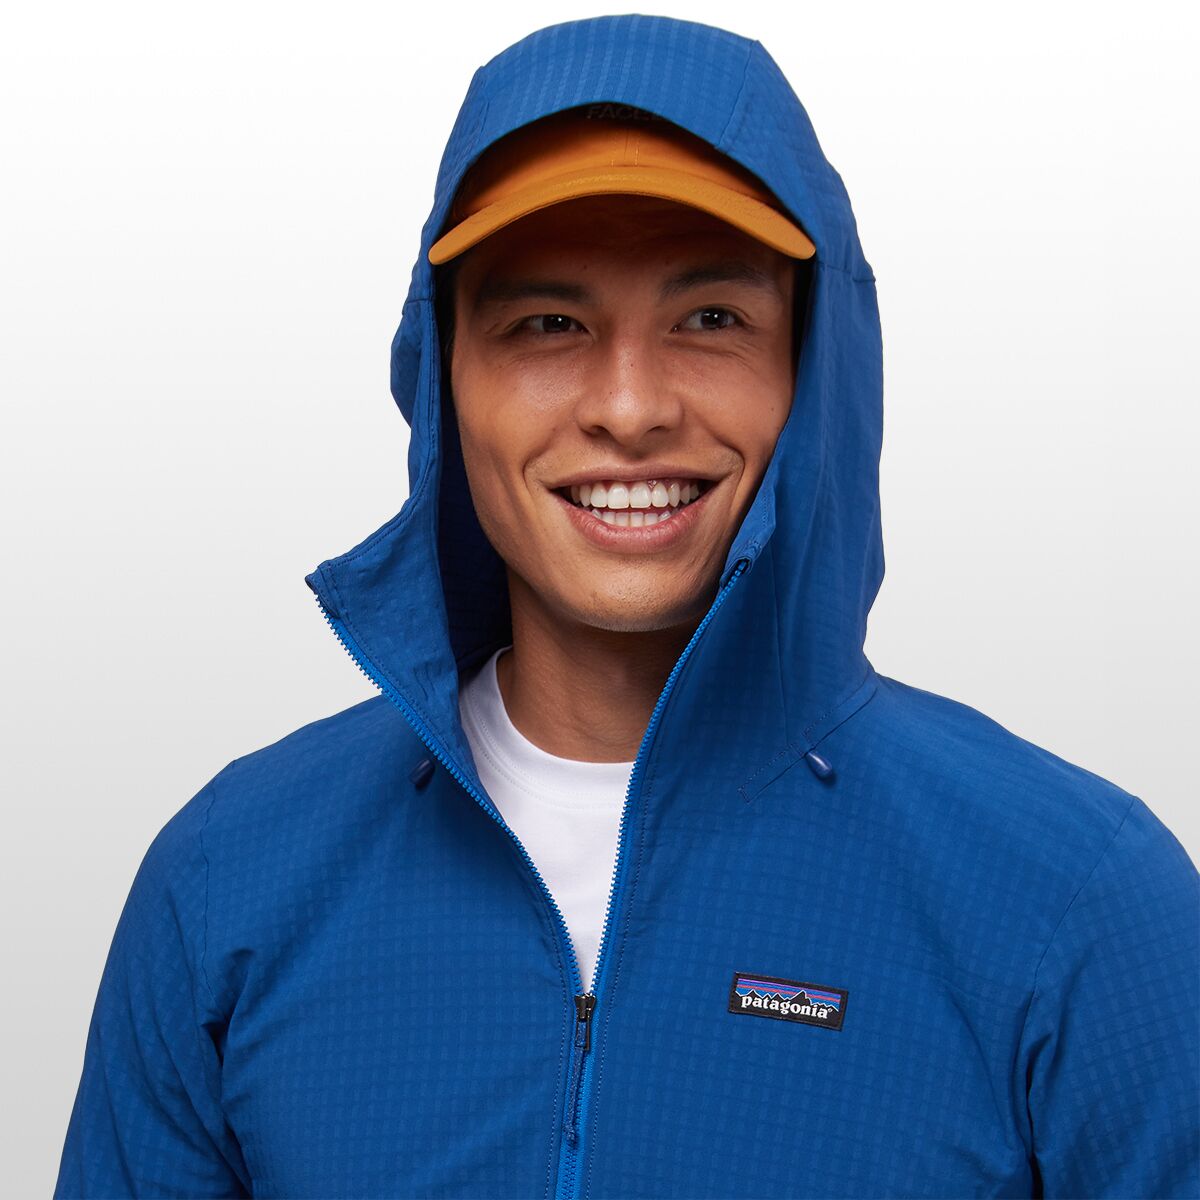 Patagonia R1 Jacket - Men's - Clothing